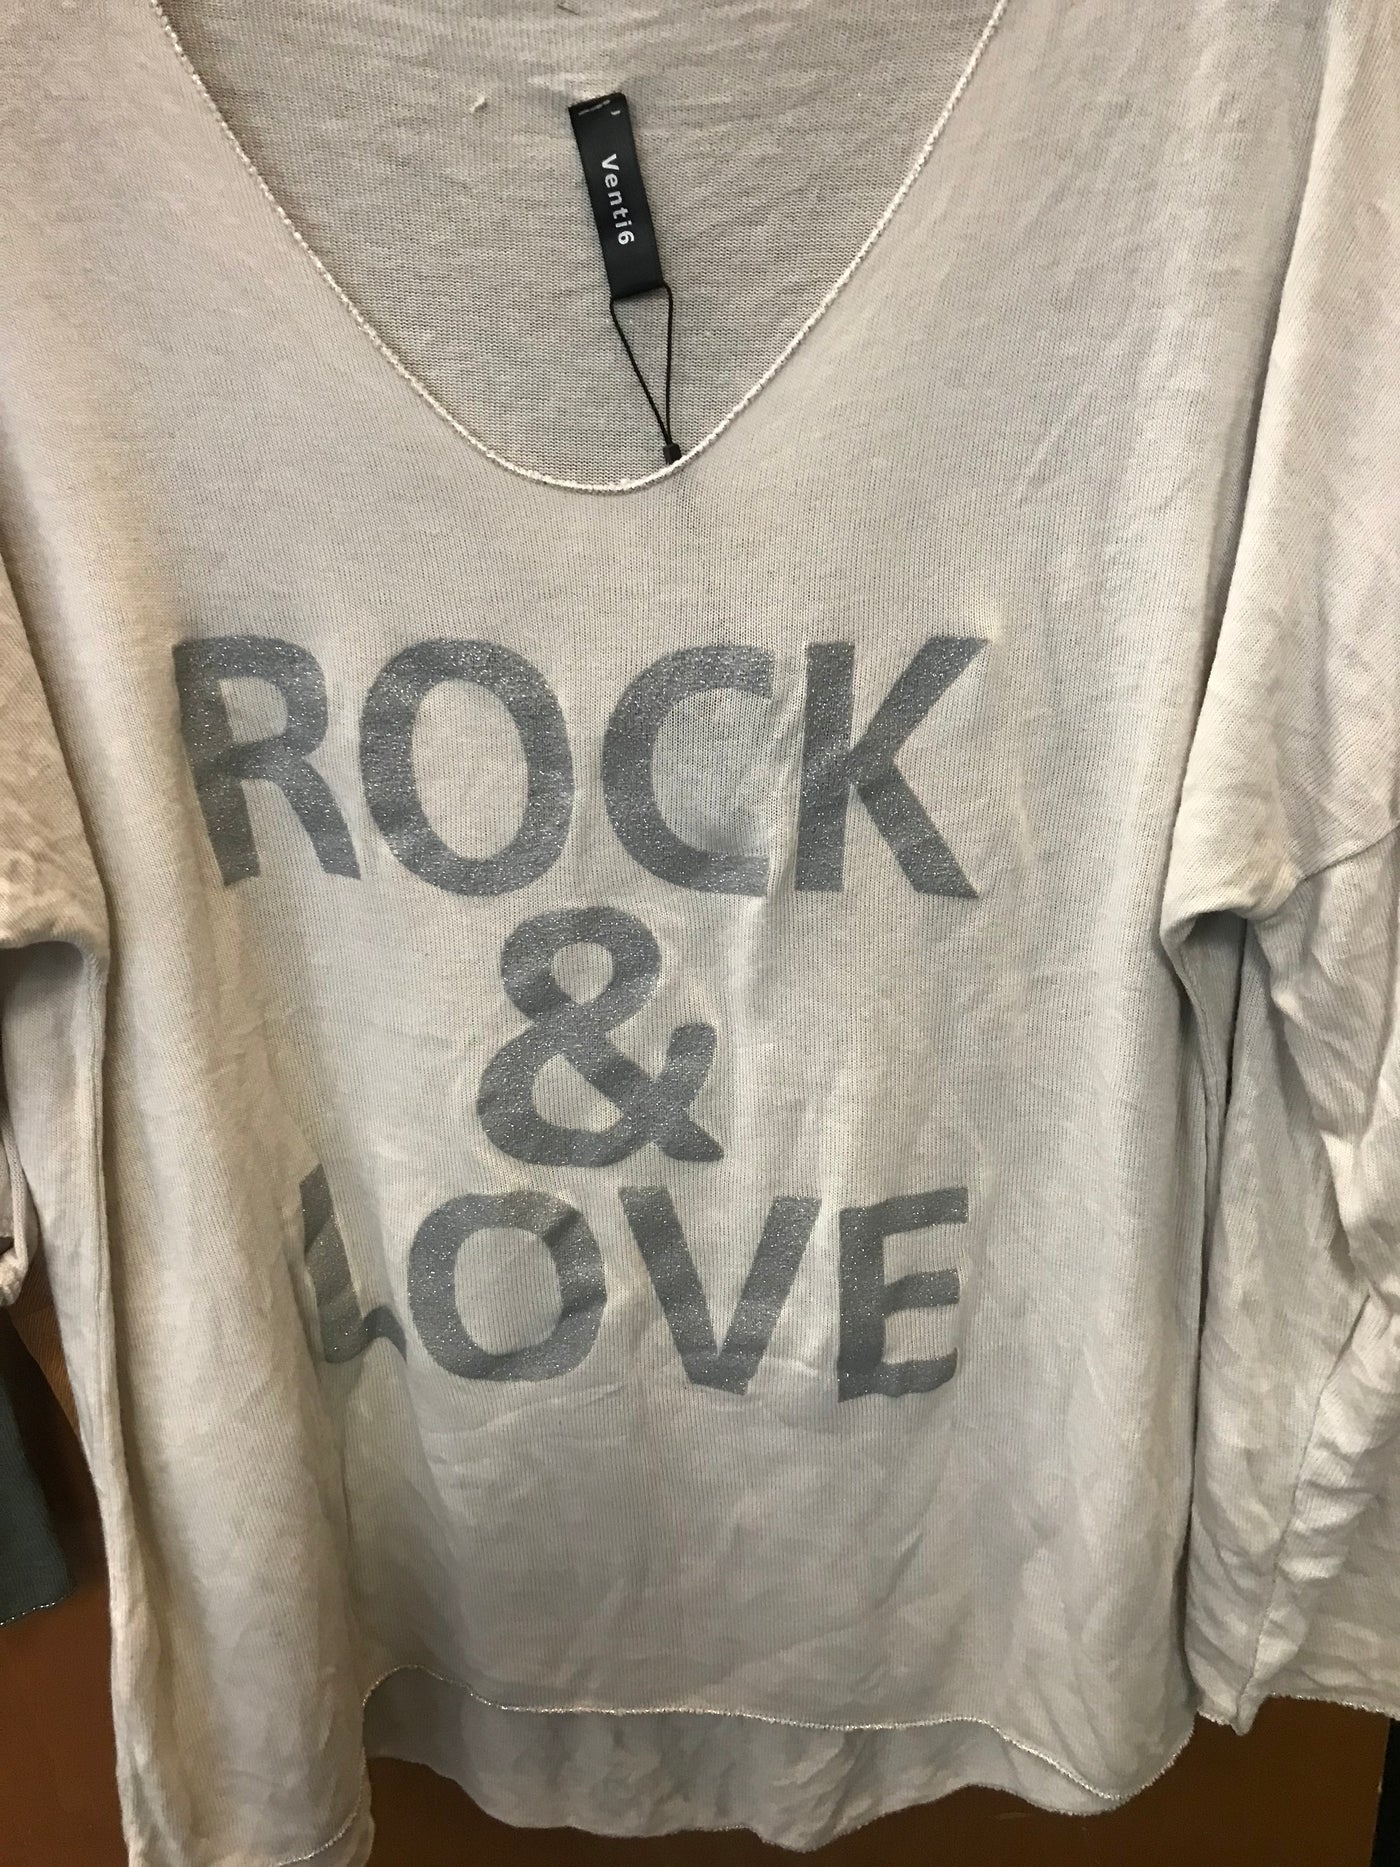 Rock & Love Top - Beige